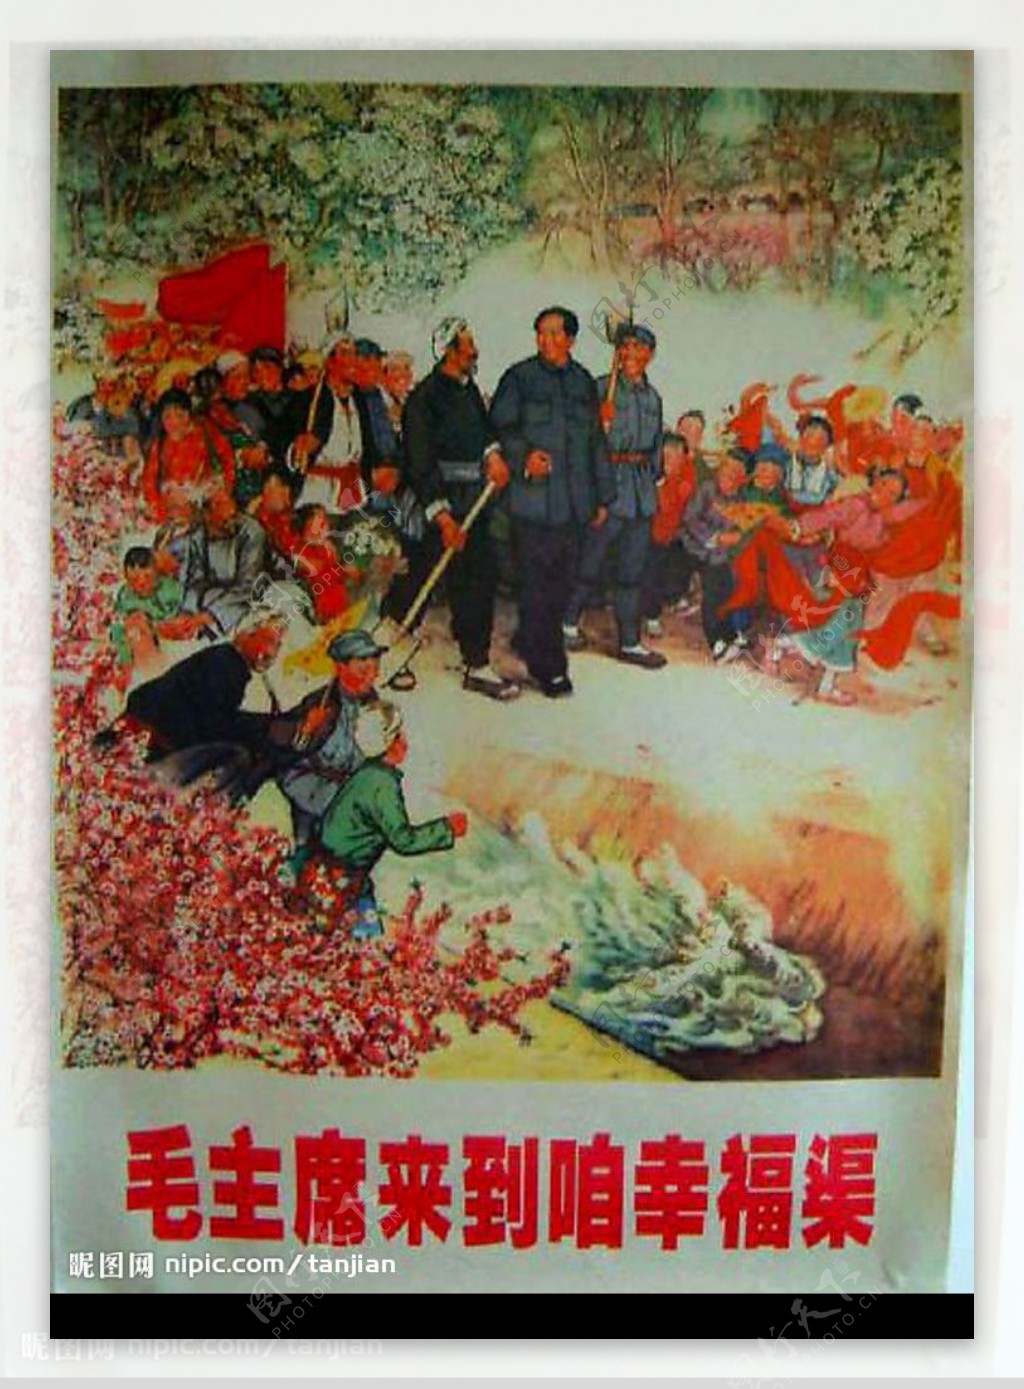 让人震撼的文革图片革命毛主席大生产保证你第1次看到